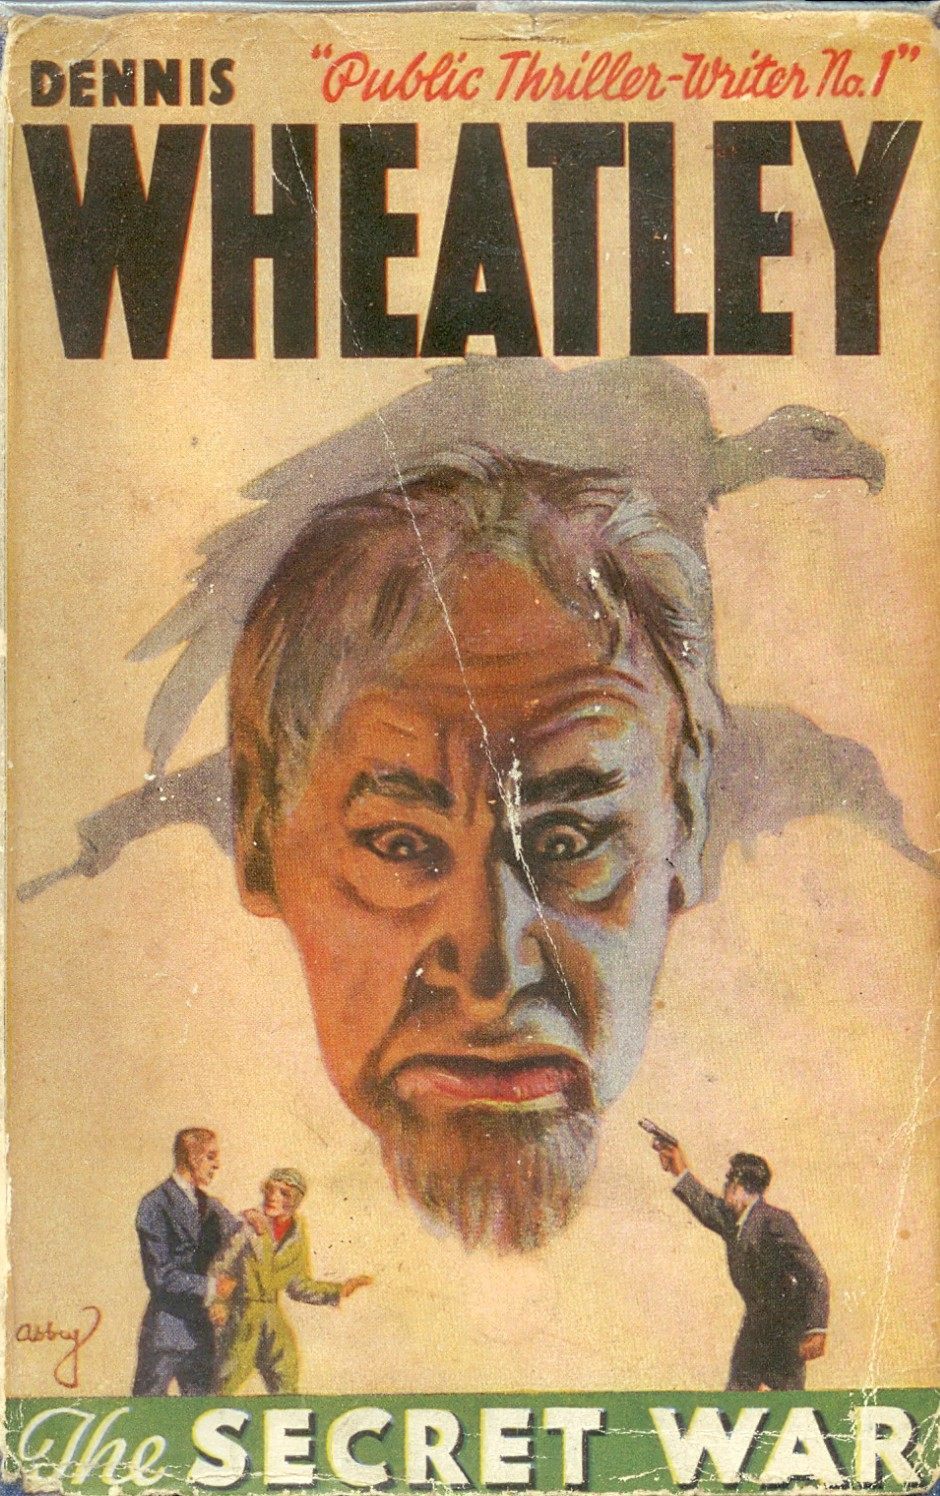 The Secret War published in 1937